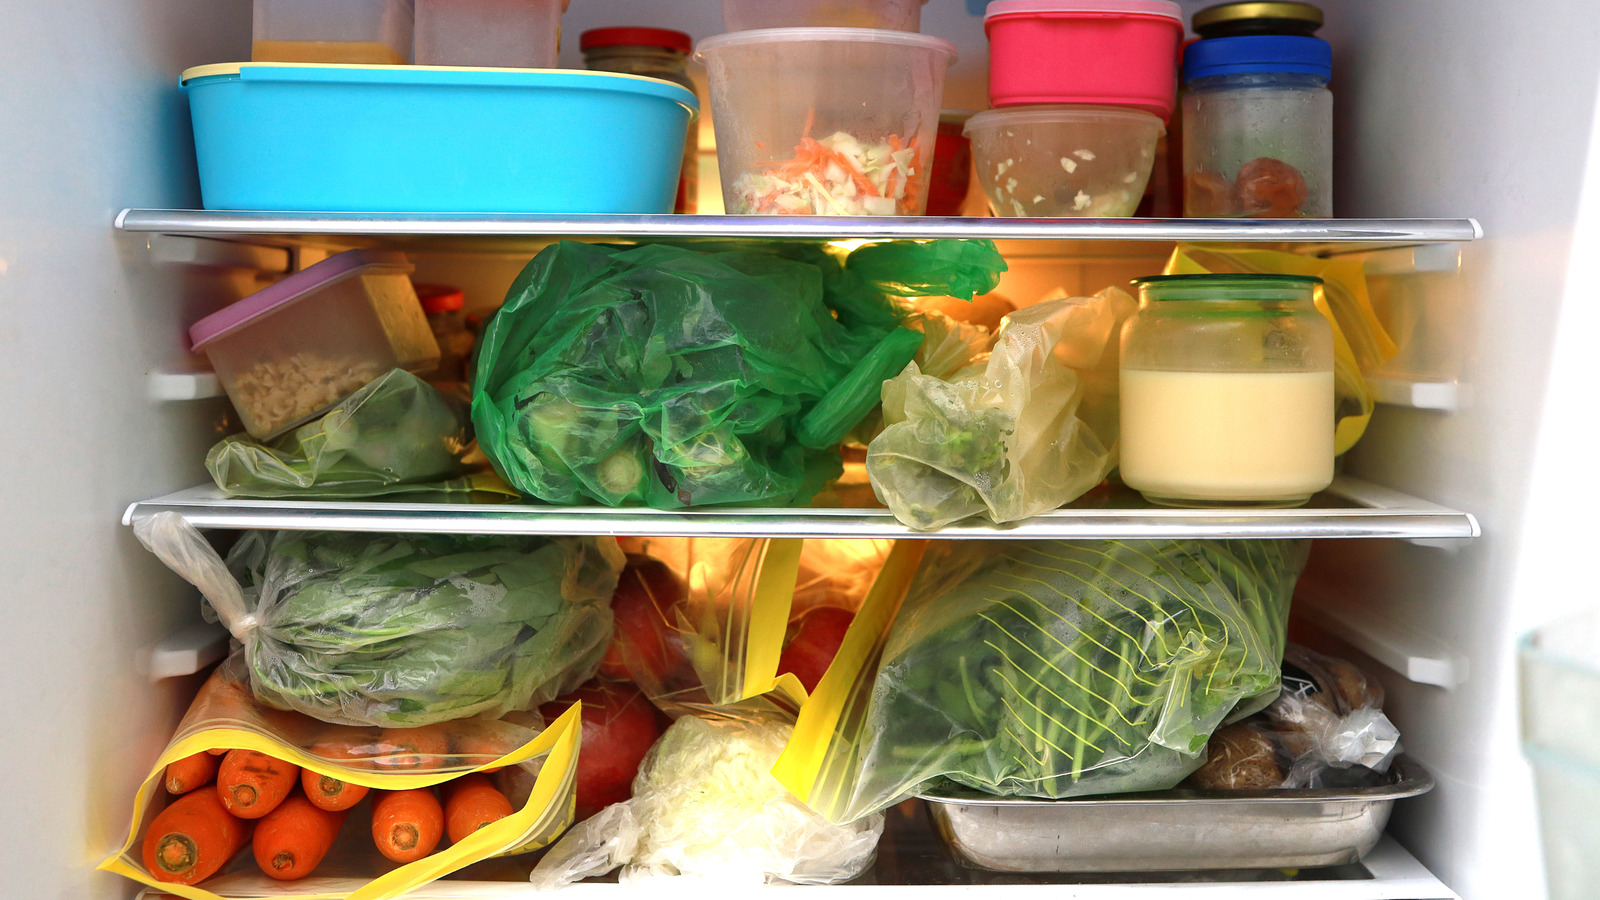 4 lý do khiến tủ lạnh gia đình bạn luôn lộn xộn và cách khắc phục đến từ chuyên gia - Ảnh 2.